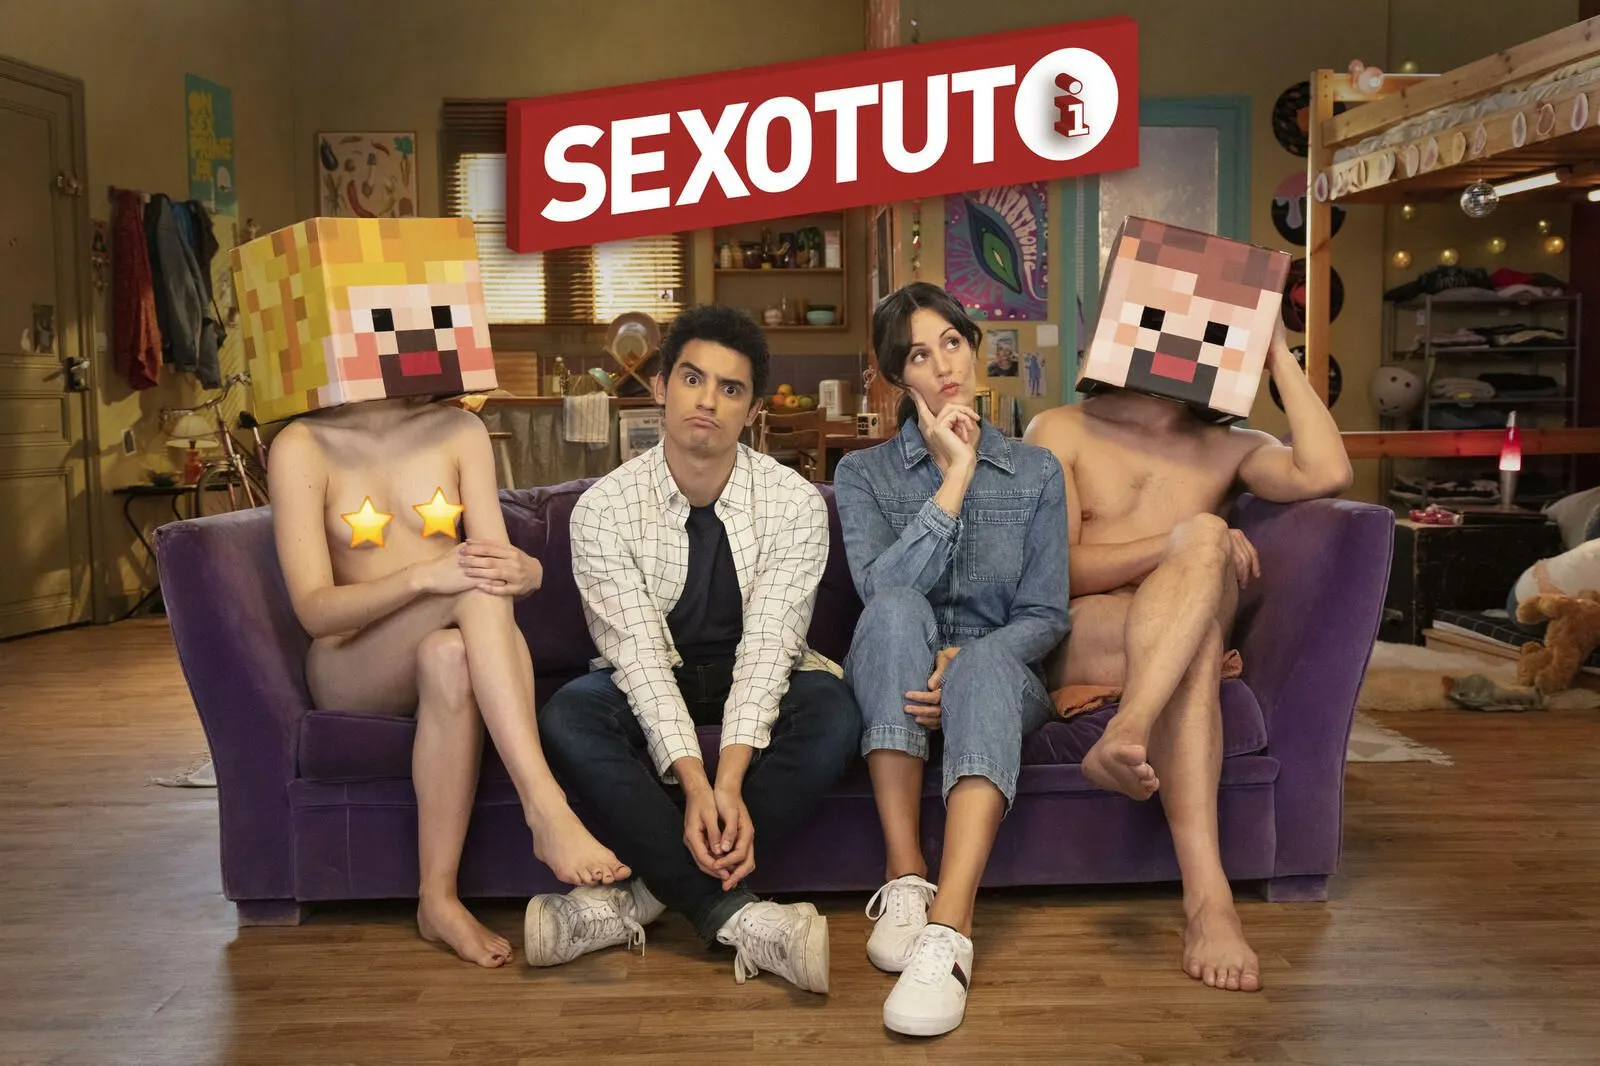 Le Sexotuto sur « Le consentement »